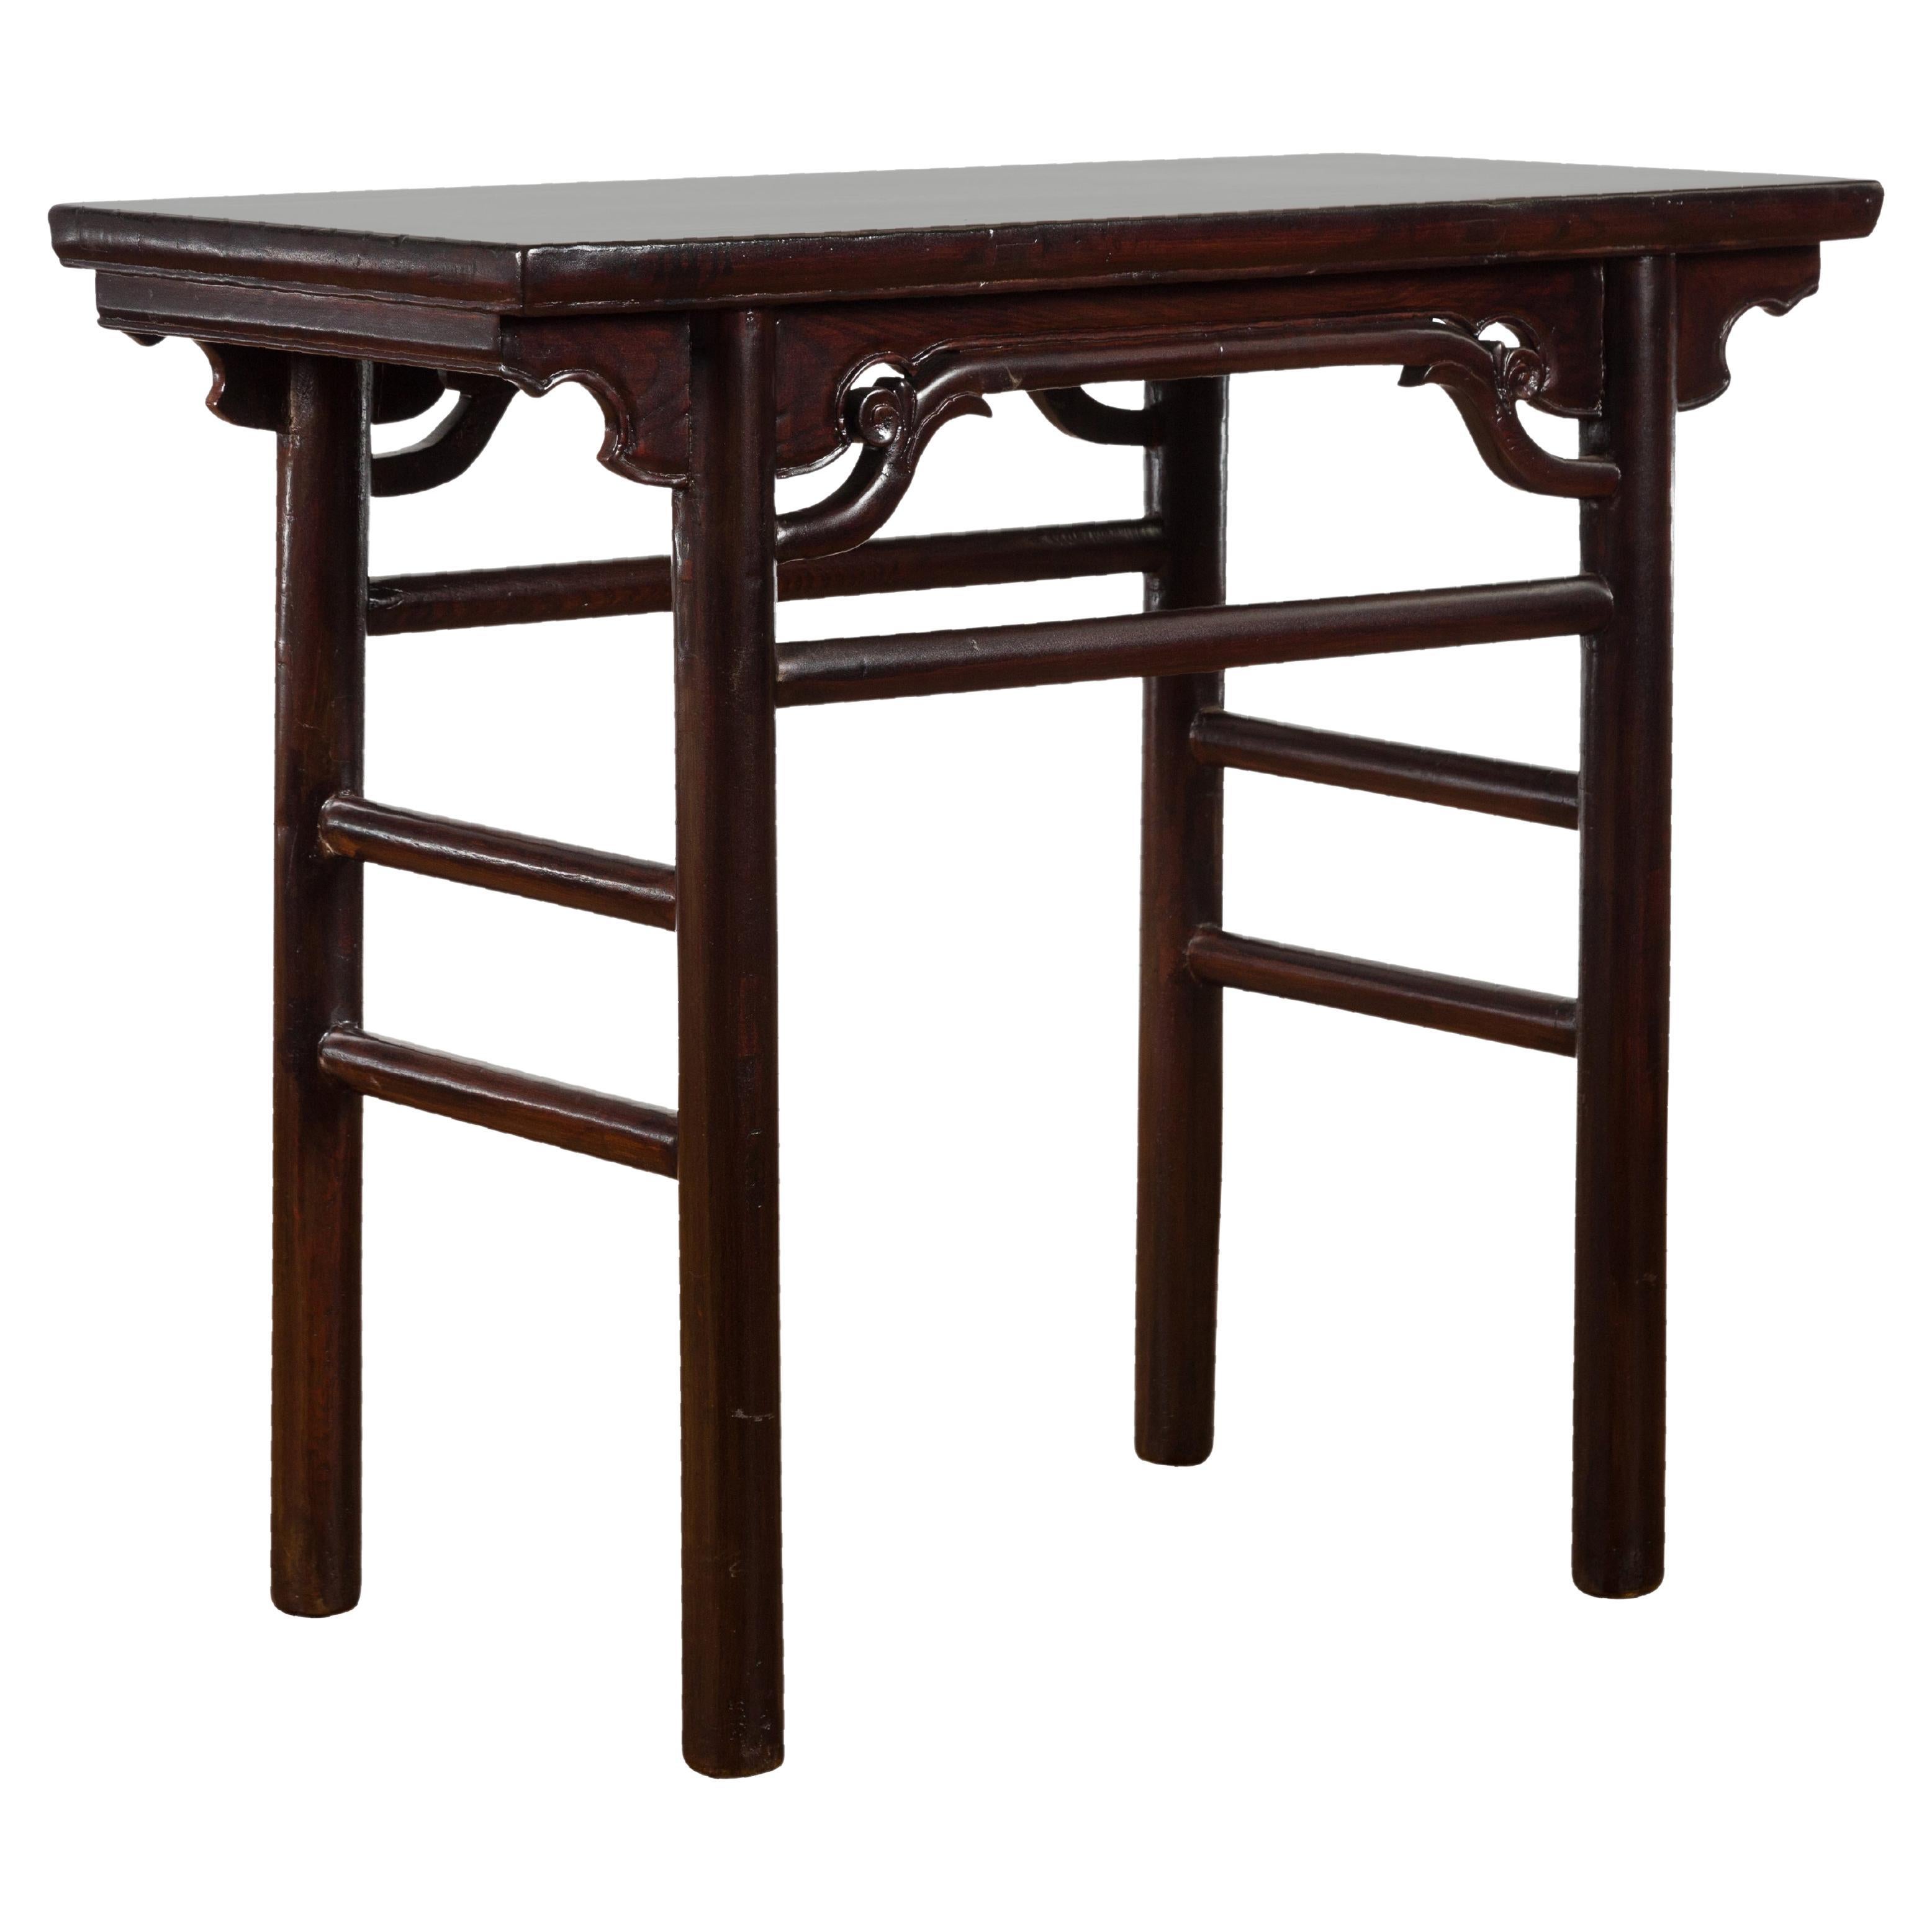 Table à vin en bois Yumu de la dynastie chinoise Qing de style Ming avec laque foncée